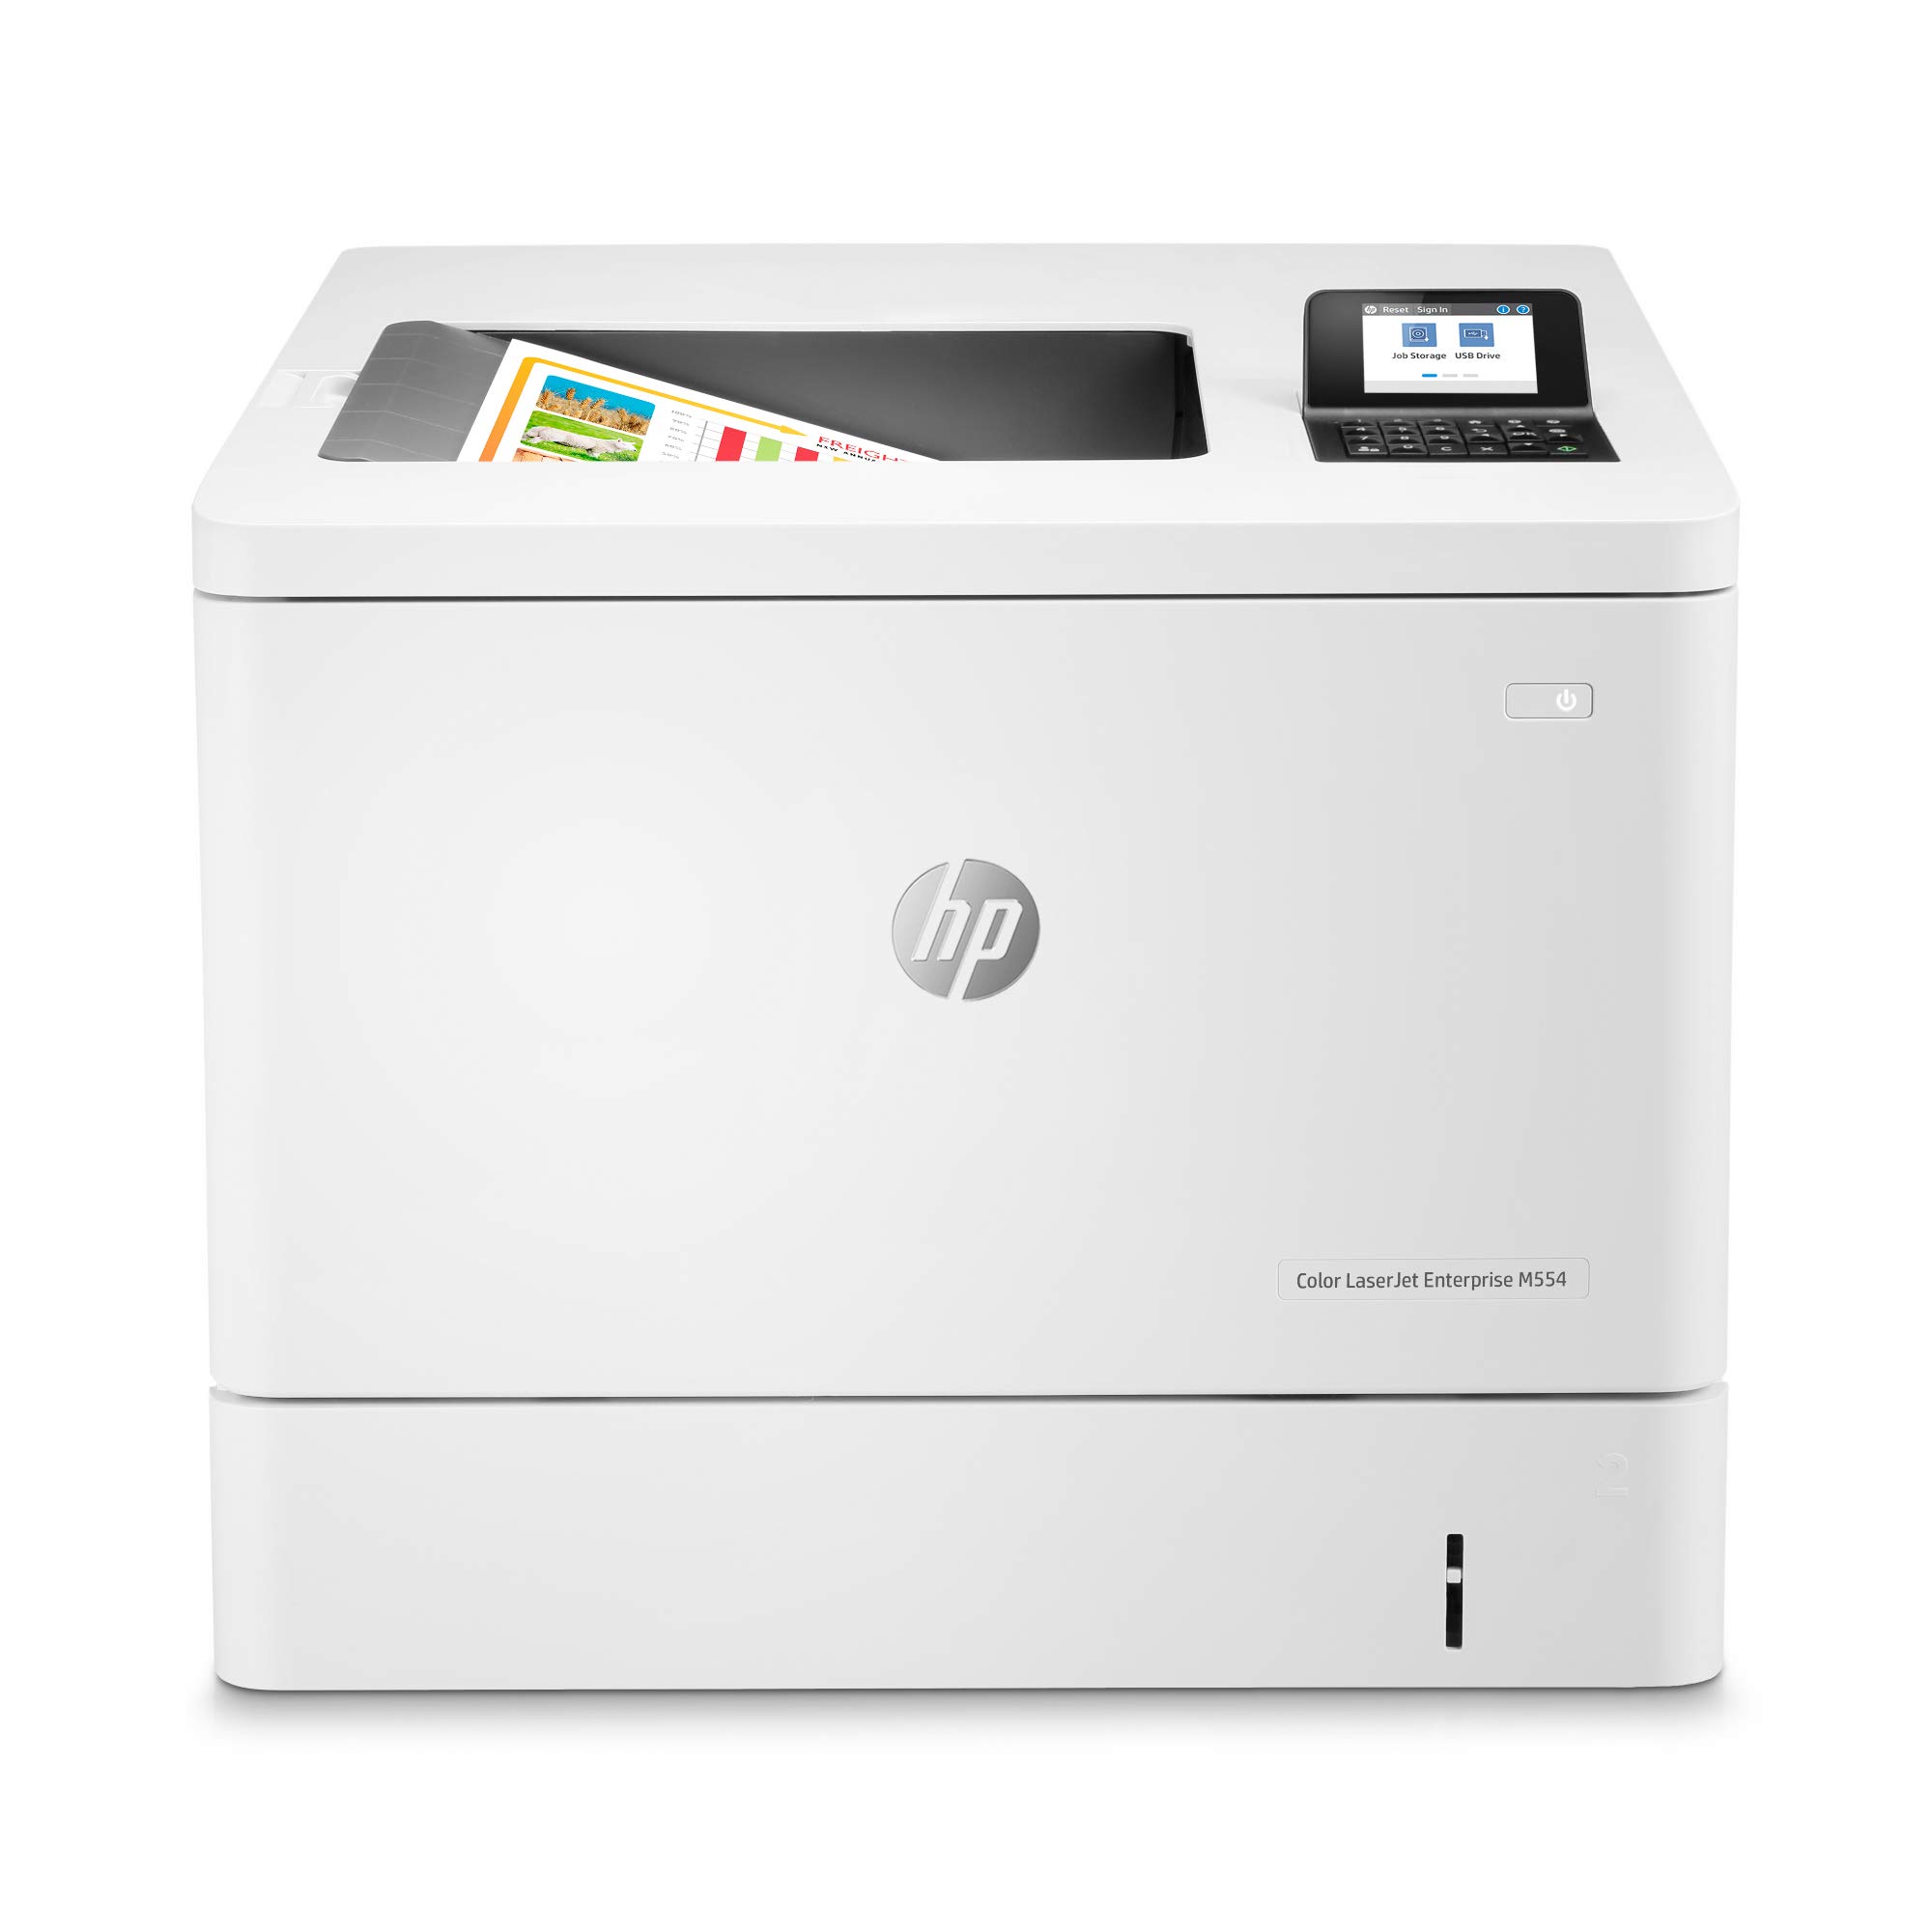 HP Color LaserJet Enterprise M554dn 双面打印机 (7ZU81A)...